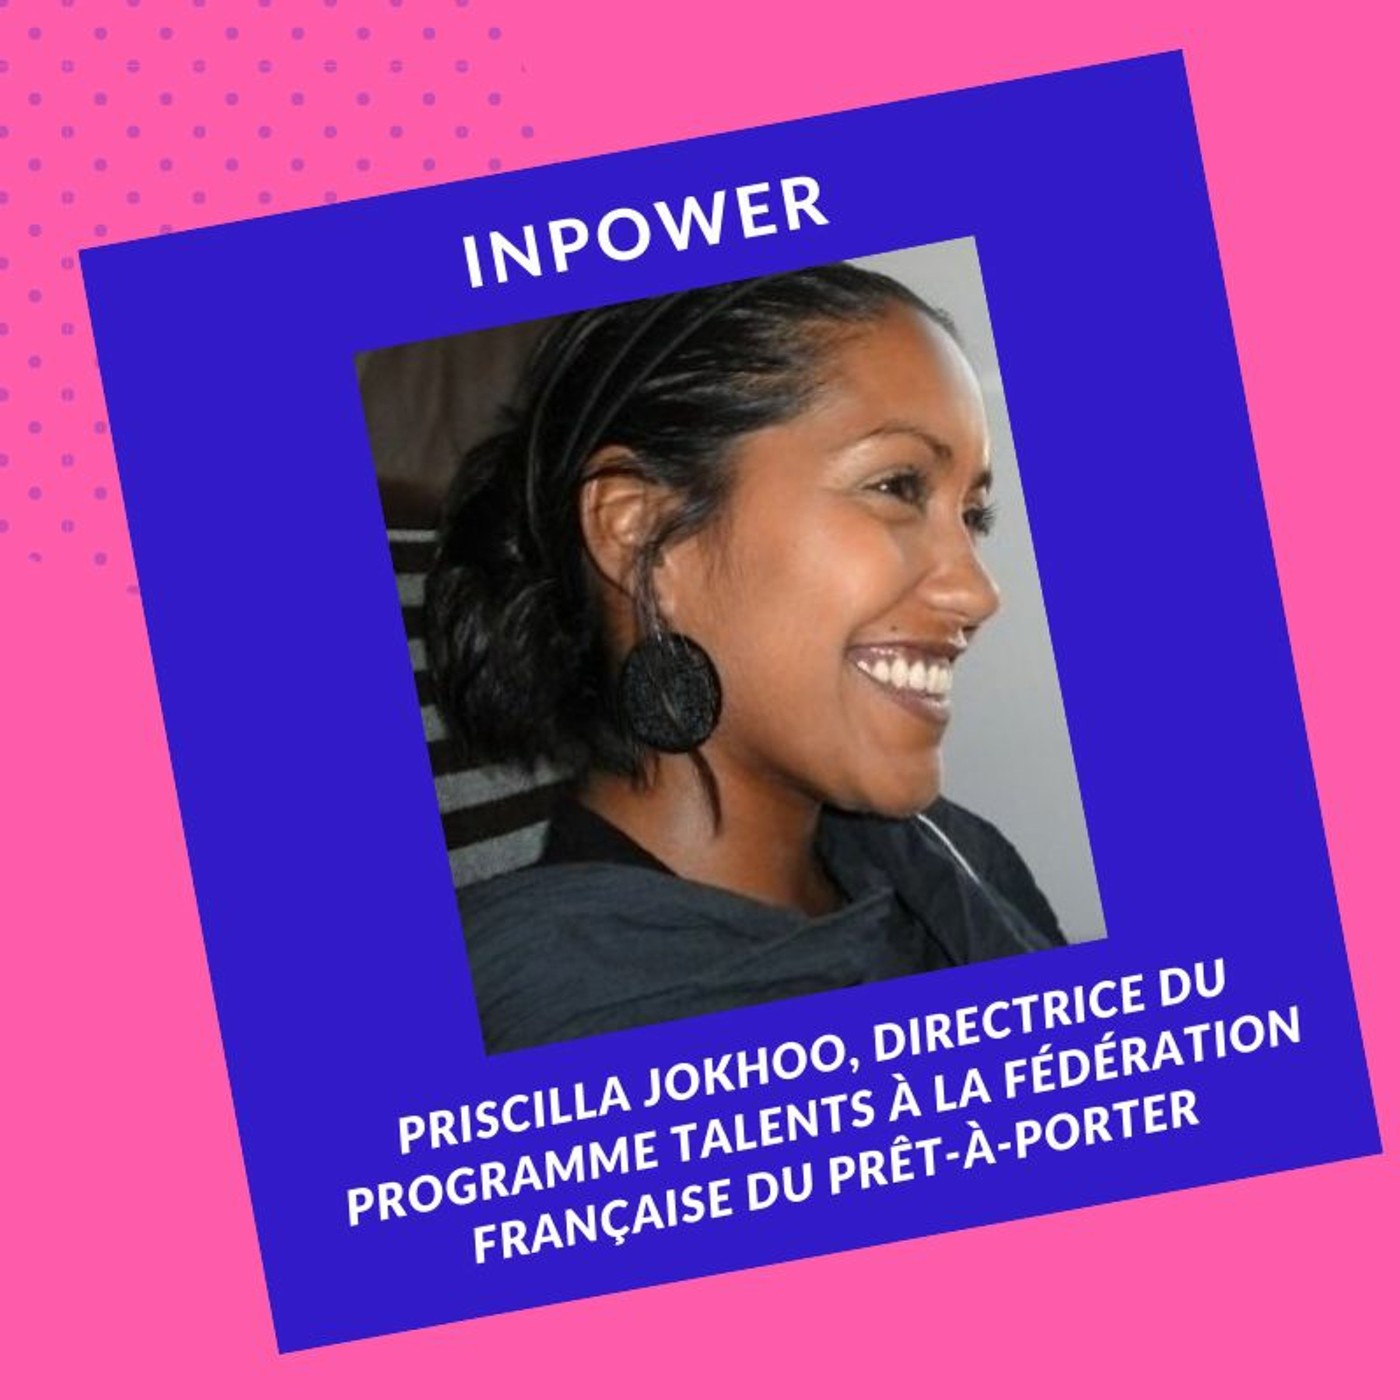 Priscilla Jokhoo - Directrice du Programme Talents à la Fédération Française du Prêt-À-Porter